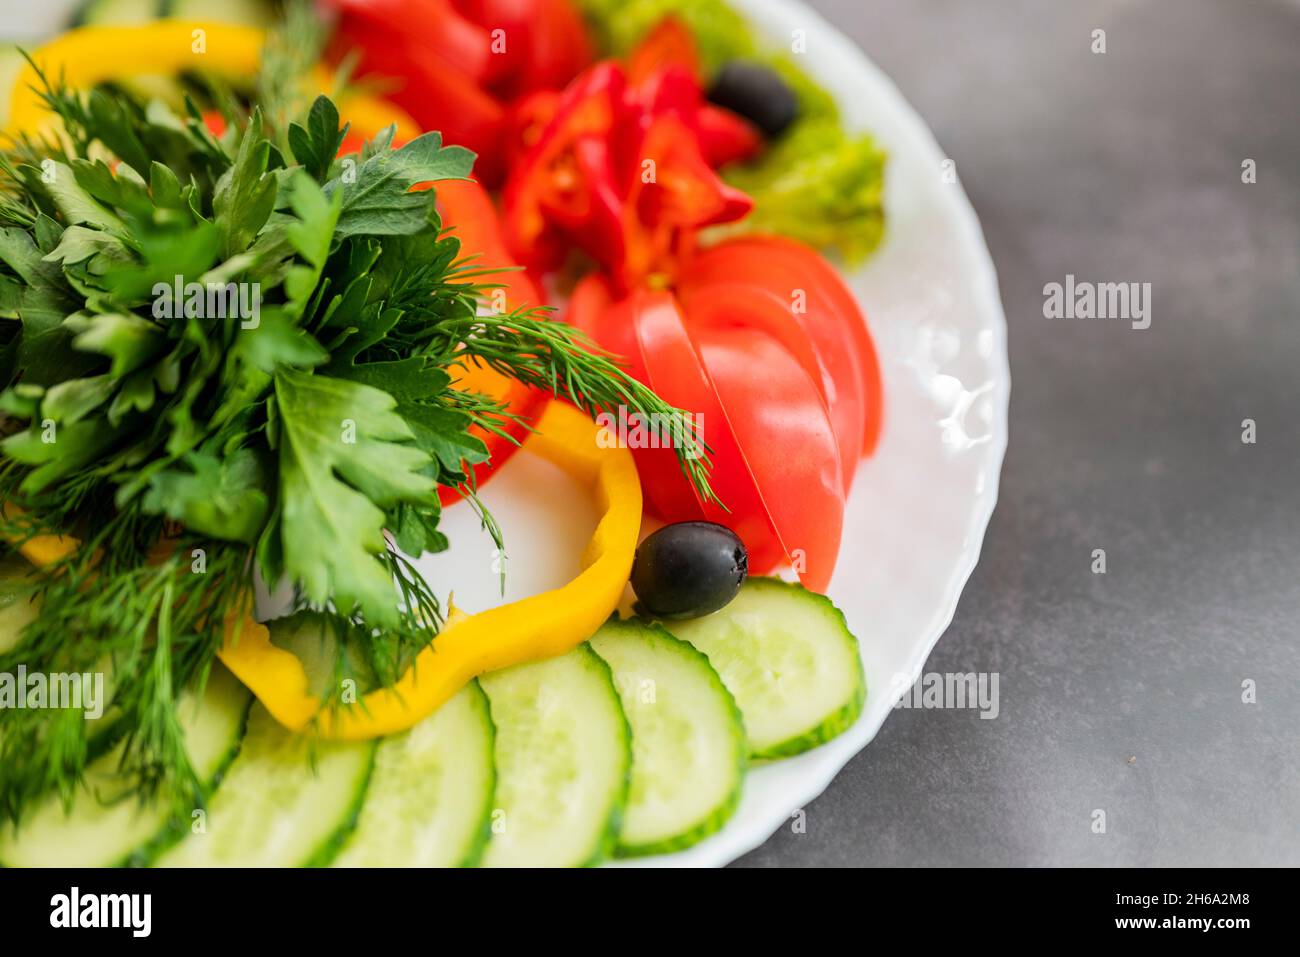 Verschiedene frische Gemüse auf einem Teller.Gericht aus Gurken, Paprika, Tomaten und Basilikum mit Petersilie und Gurke Stockfoto